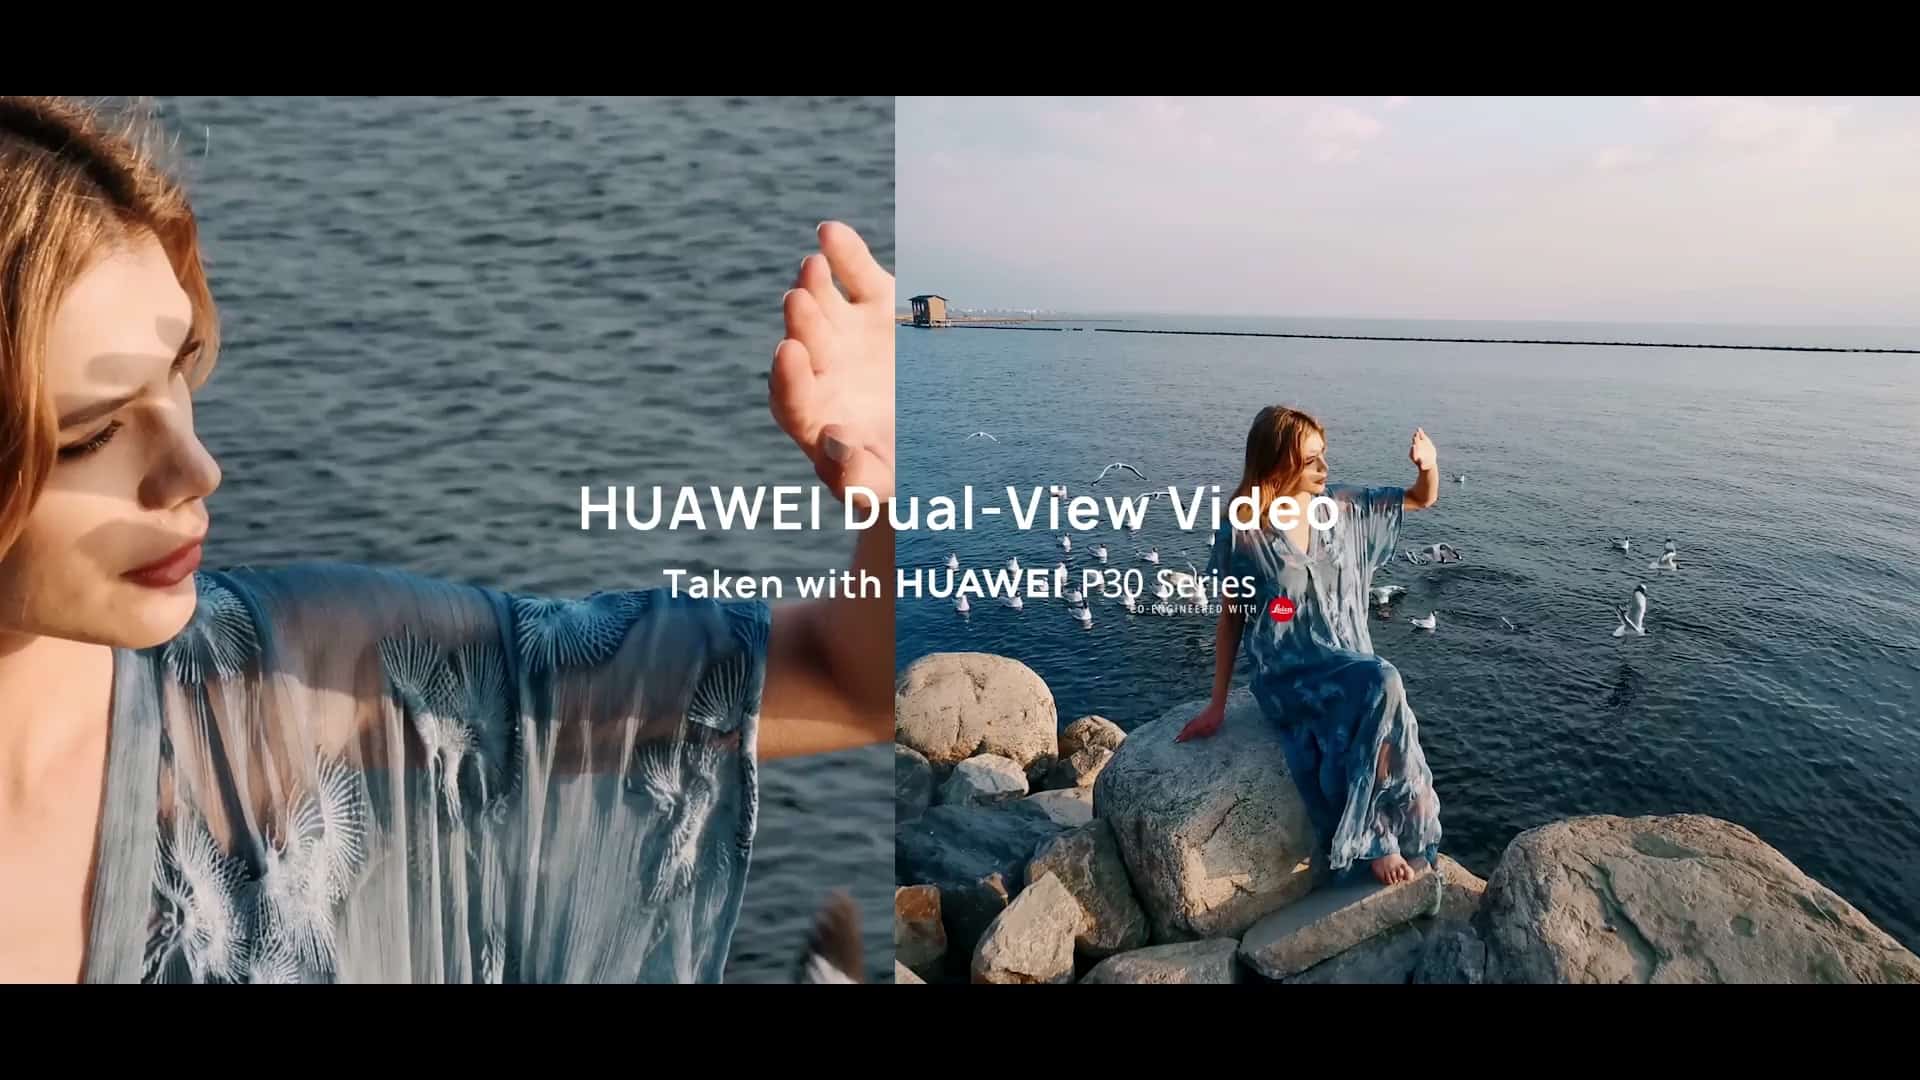 HUAWEI เปิดตัวสมาร์ทโฟนเรือธงกล้องเทพ P30 Series พร้อมนาฬิกา แว่นตาอัจฉริยะ และหูฟังไร้สายใหม่ 13